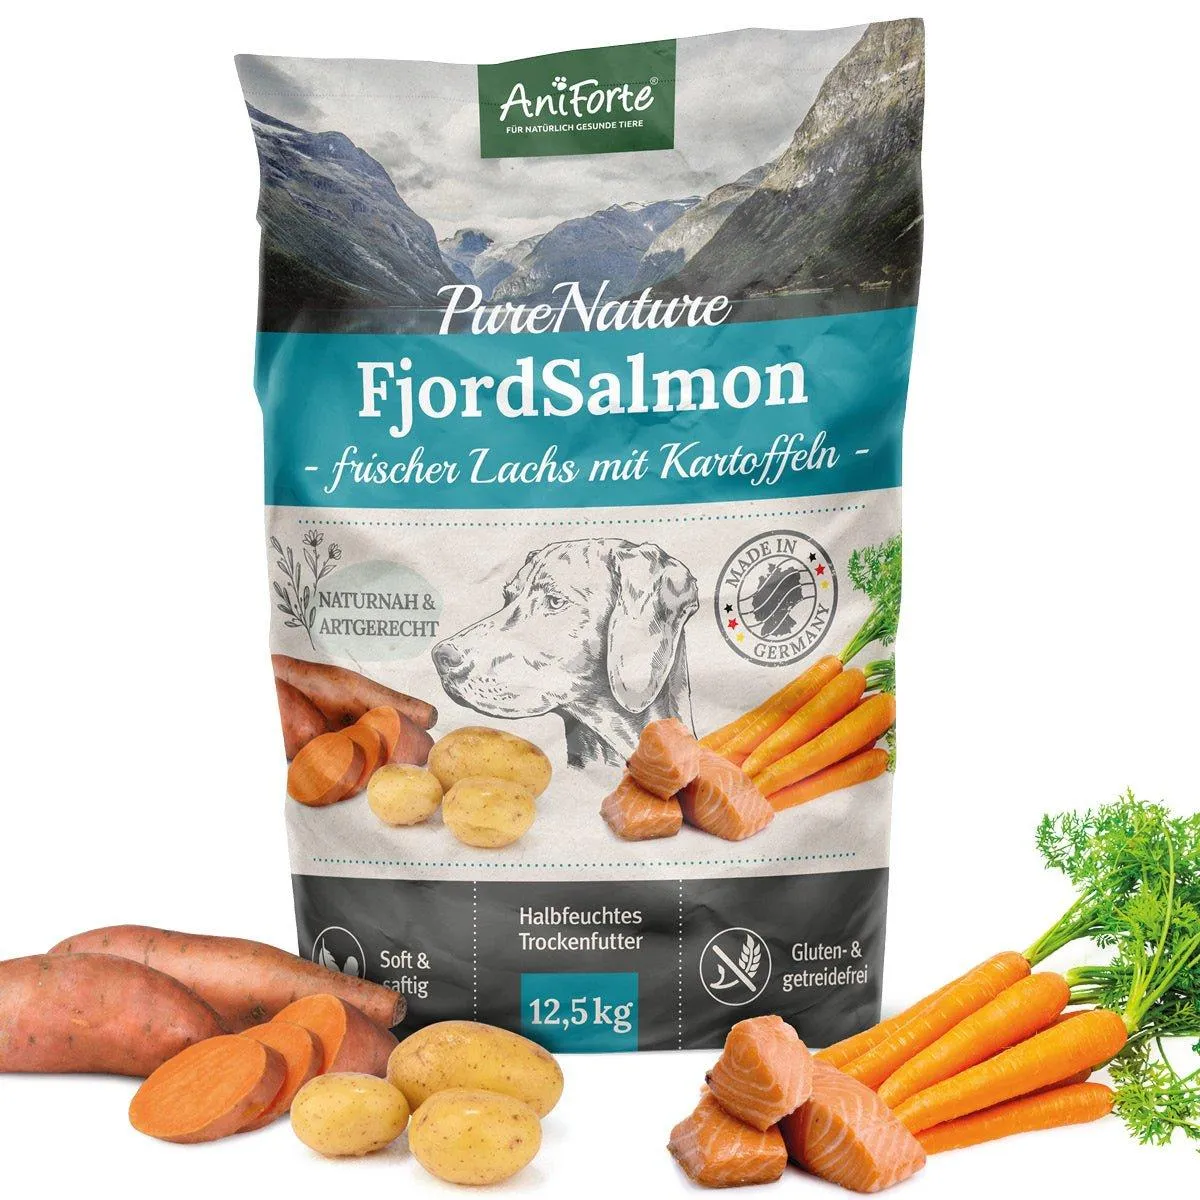 Bild von Trockenfutter FjordSalmon - Frischer Lachs mit Kartoffeln 12,5 kg